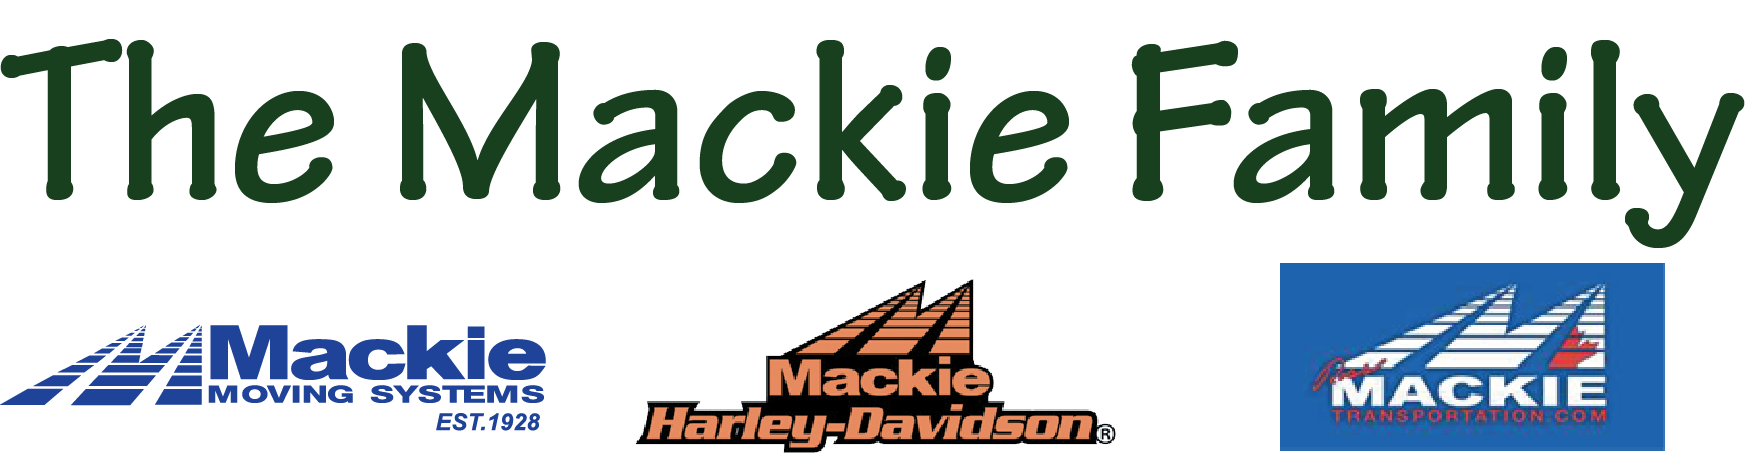 The Mackie Family logo